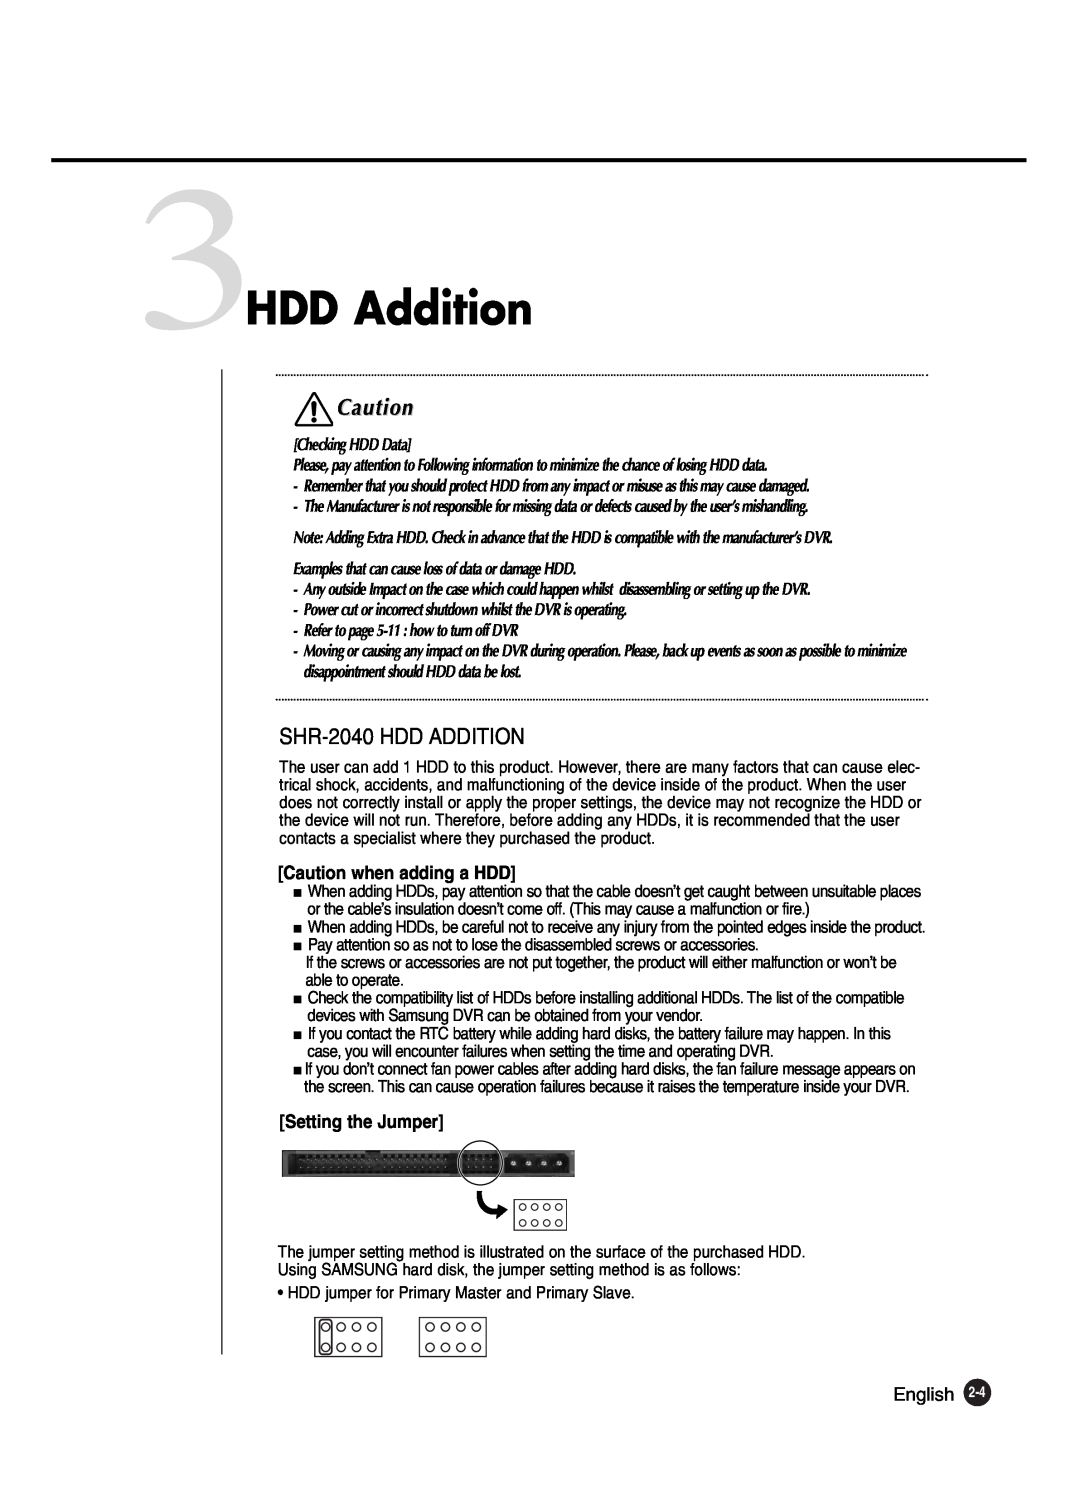 Samsung SHR-2040P250, SHR-2042P250 manual 3HDD Addition, SHR-2040 HDD ADDITION 